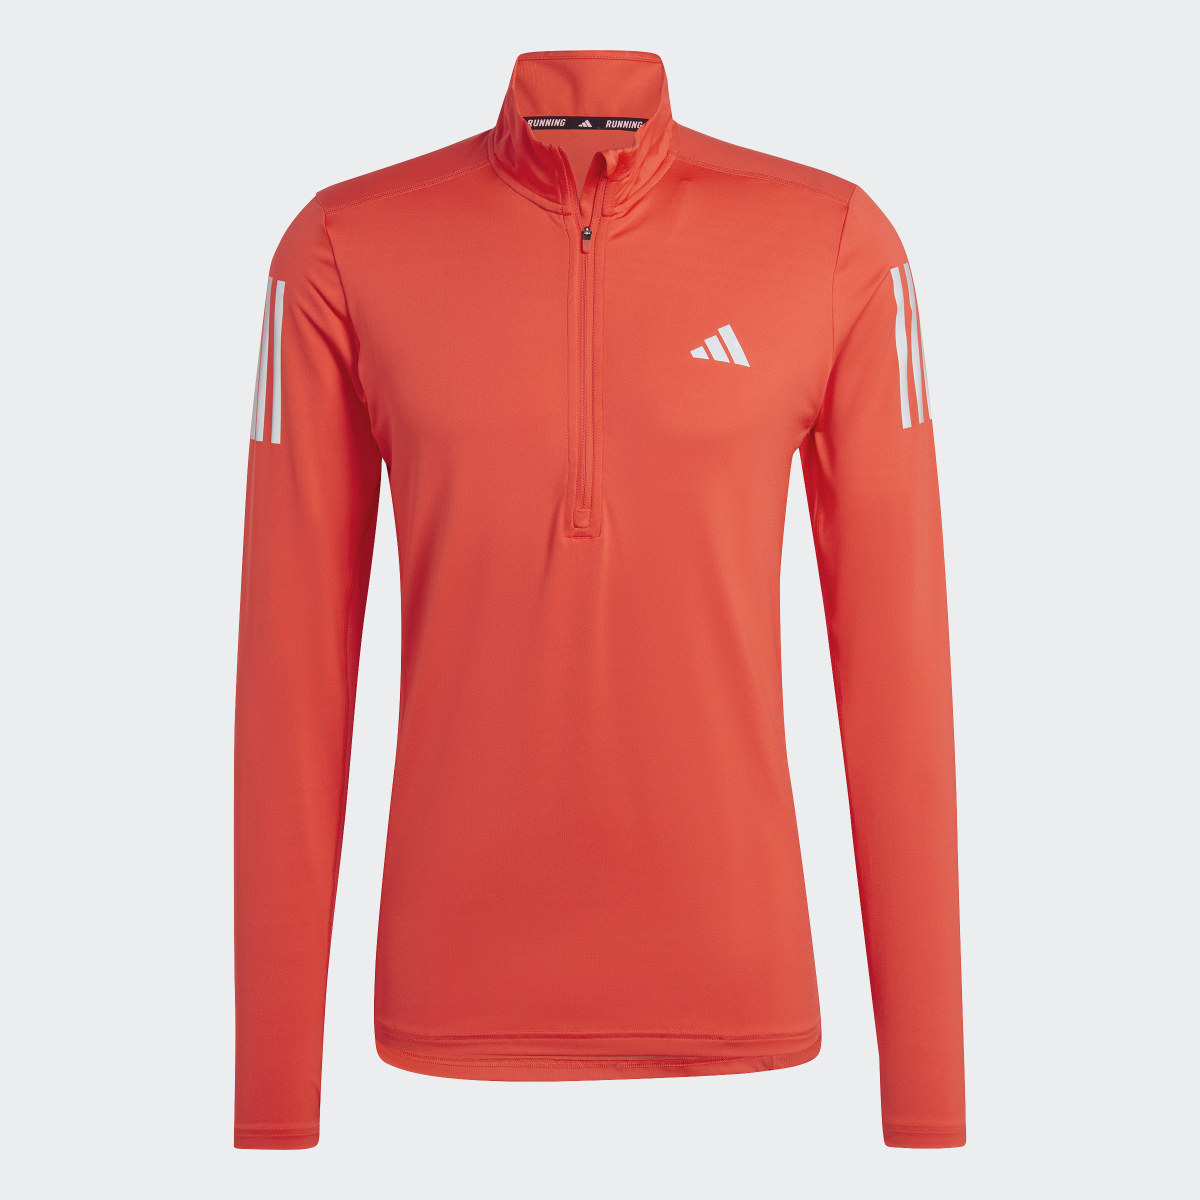 Adidas Own the Run 1/4 Zip Long Sleeve Sweatshirt. 5